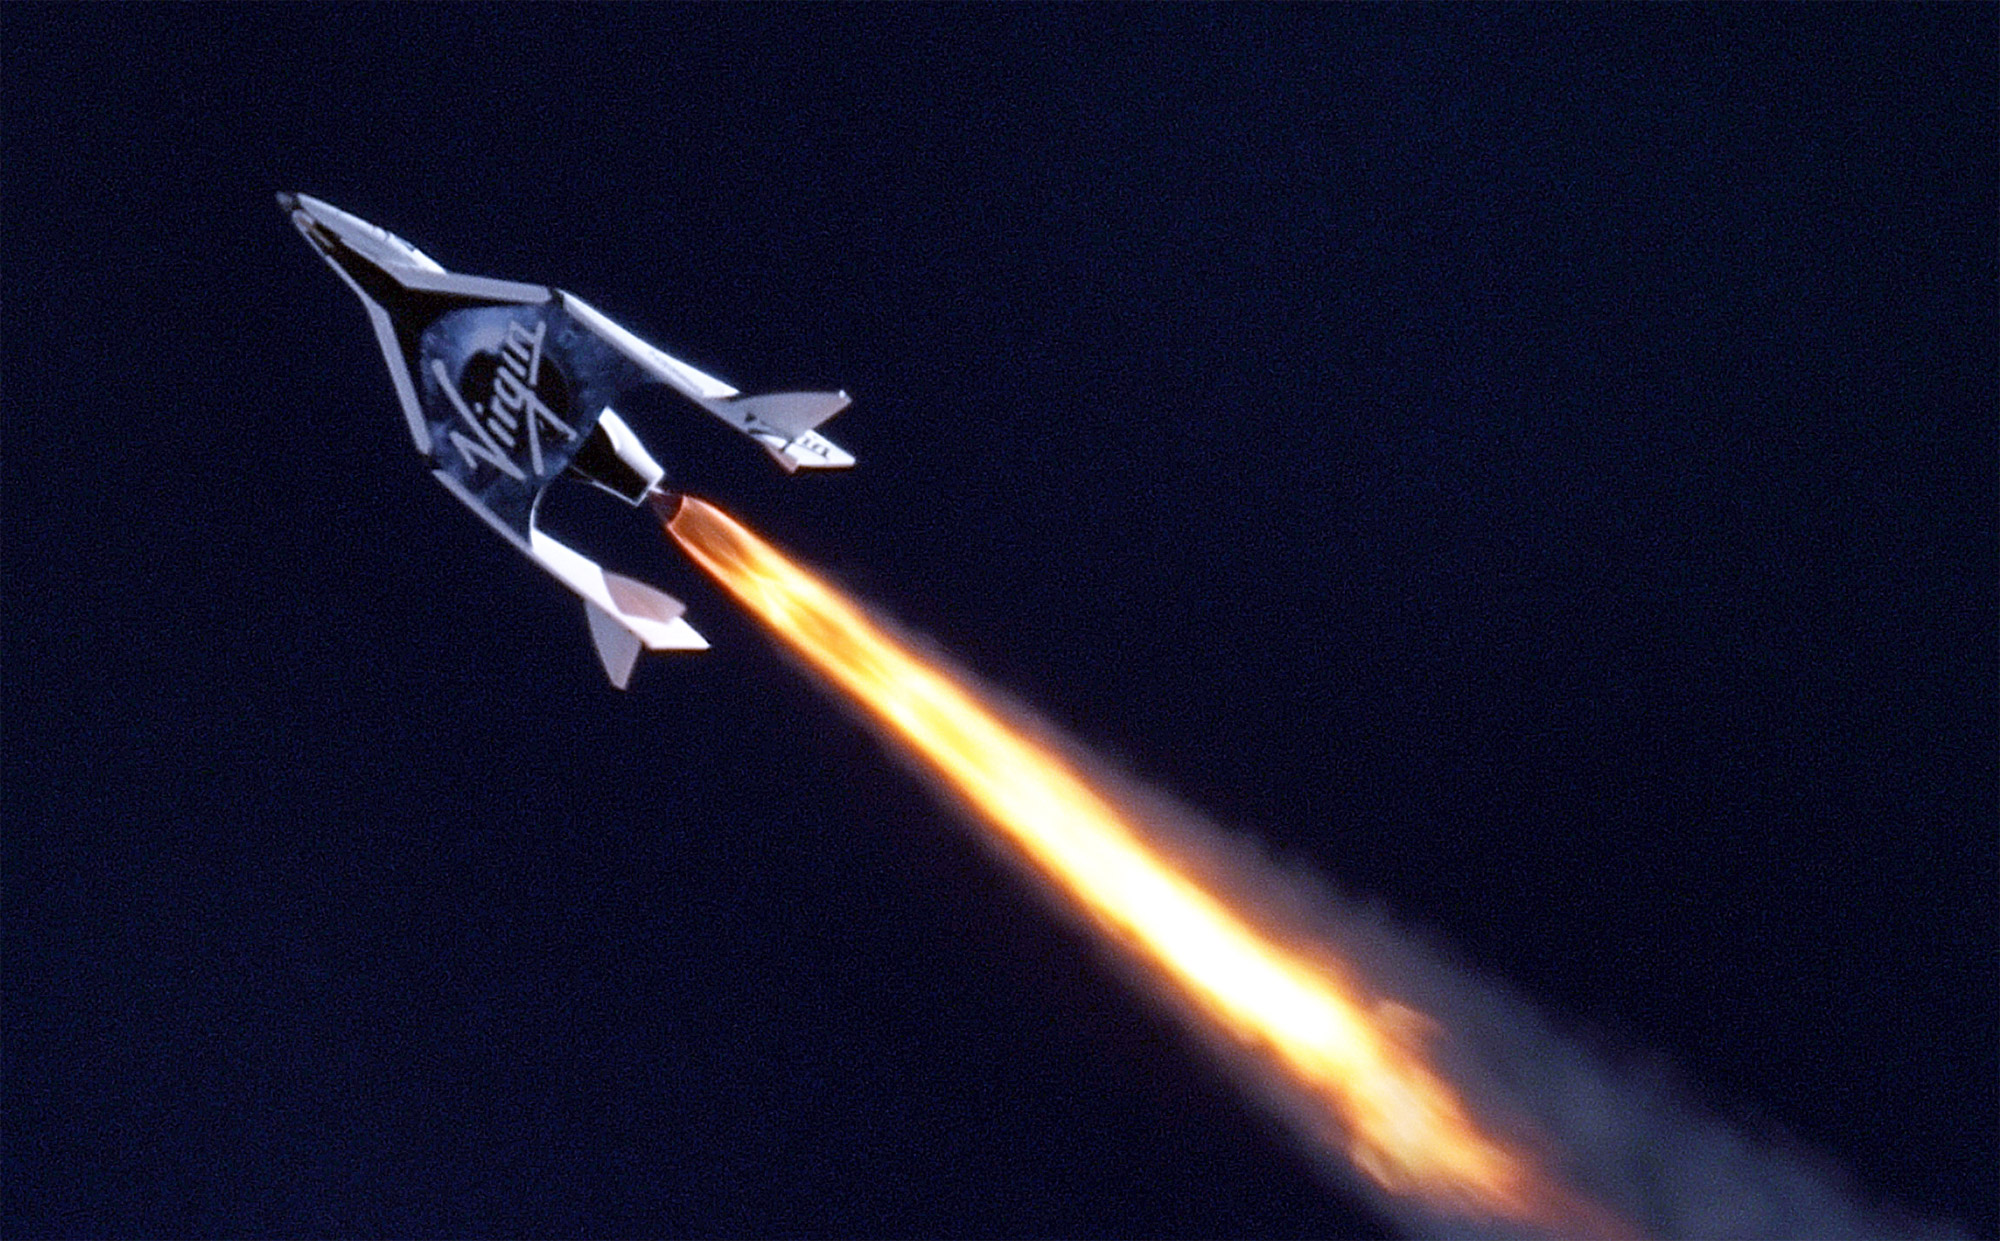 Le SpaceShipTwo de Virgin Galactic lors de son vol d'essai, qui lui a permis de franchir le mur du son. © MarsScientific.com and Clay Center Observatory